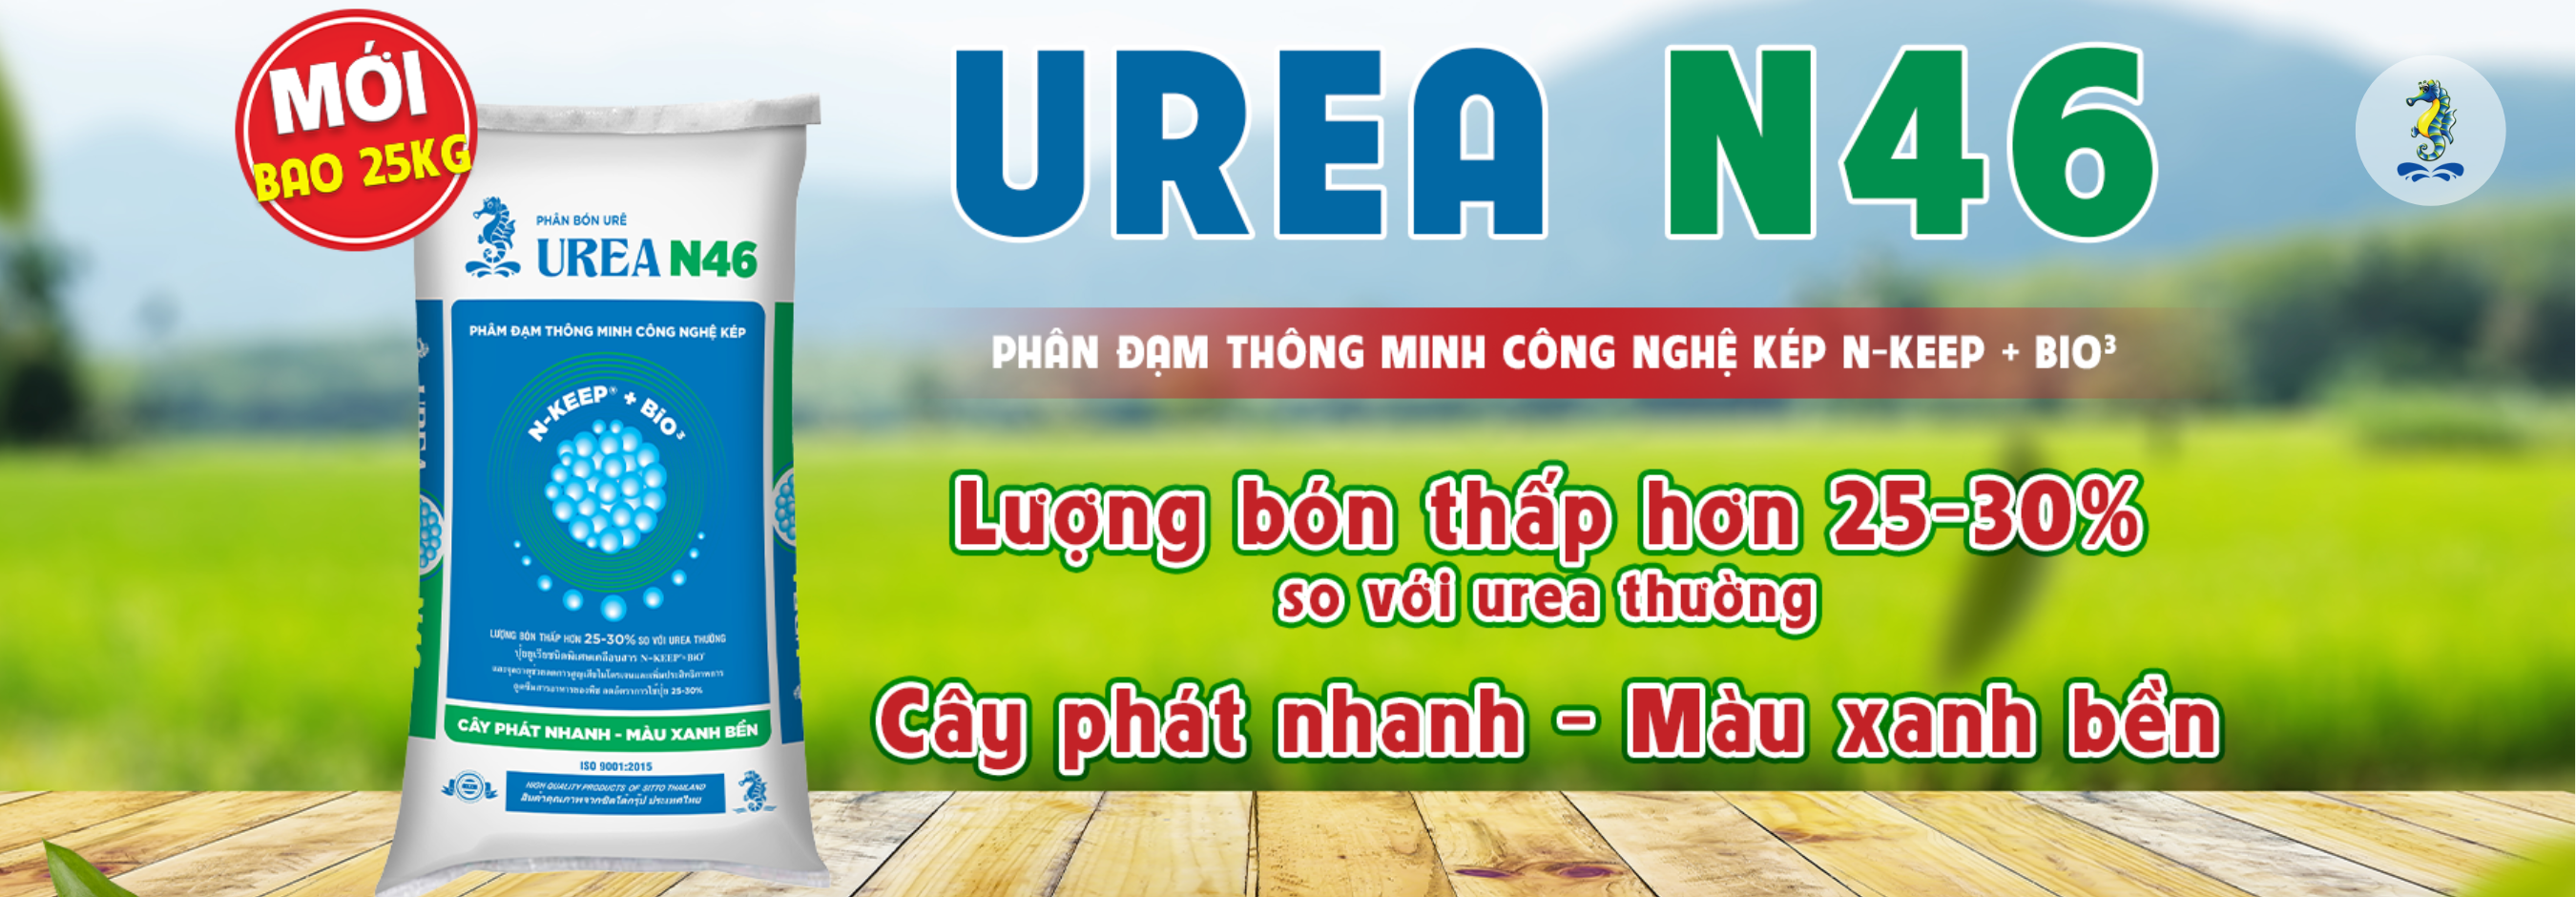 Urea N46 - Banner